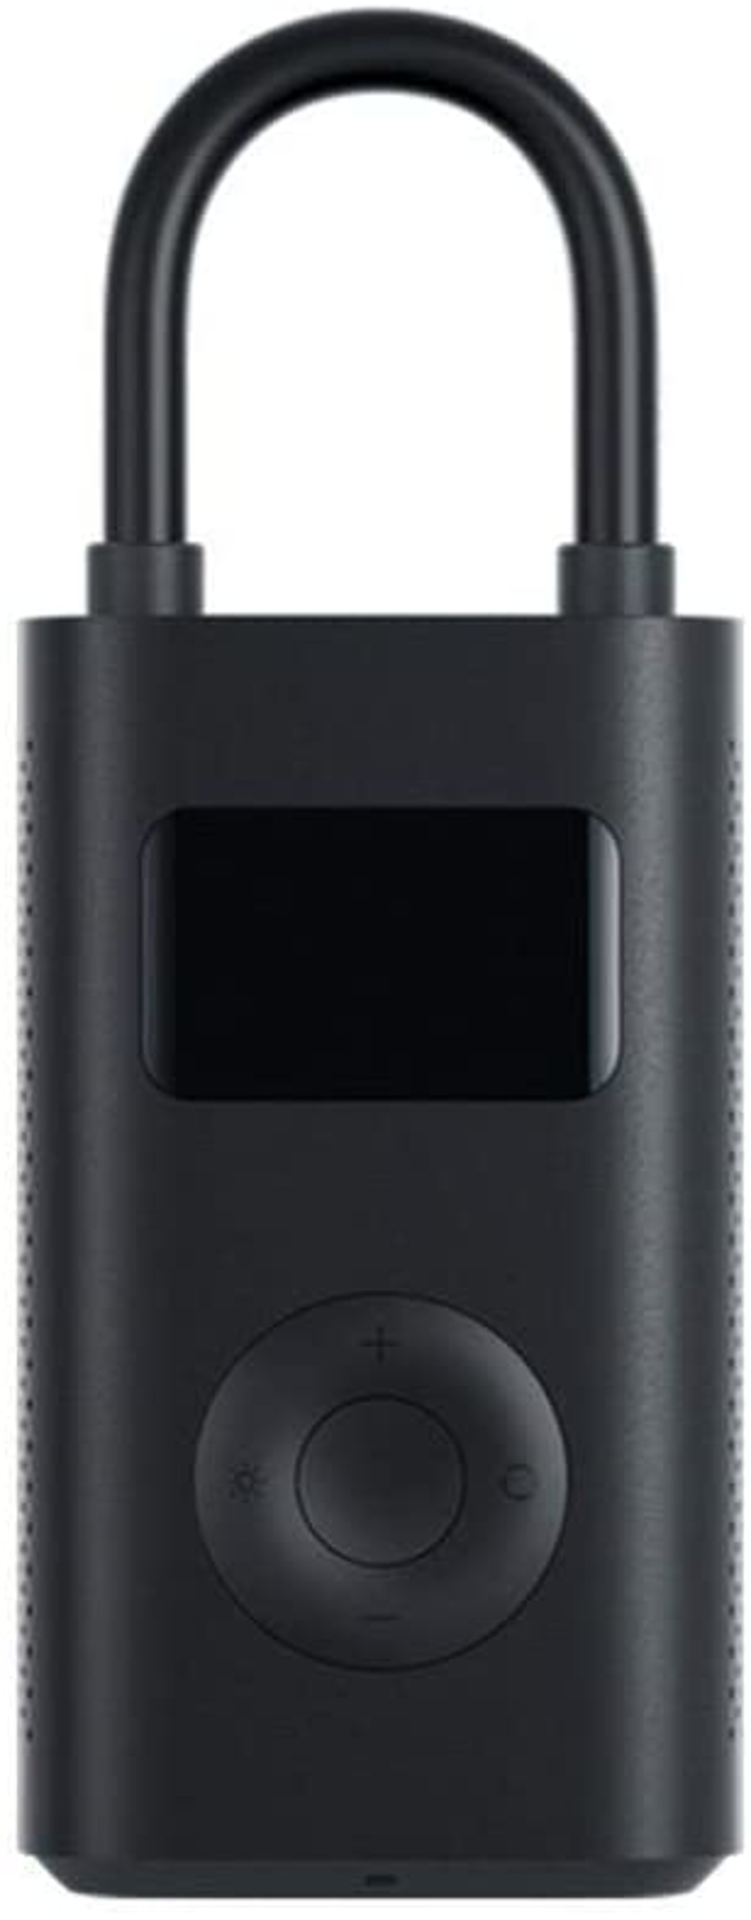 Xiaomi Mi Mini Pompe à air portable Noir